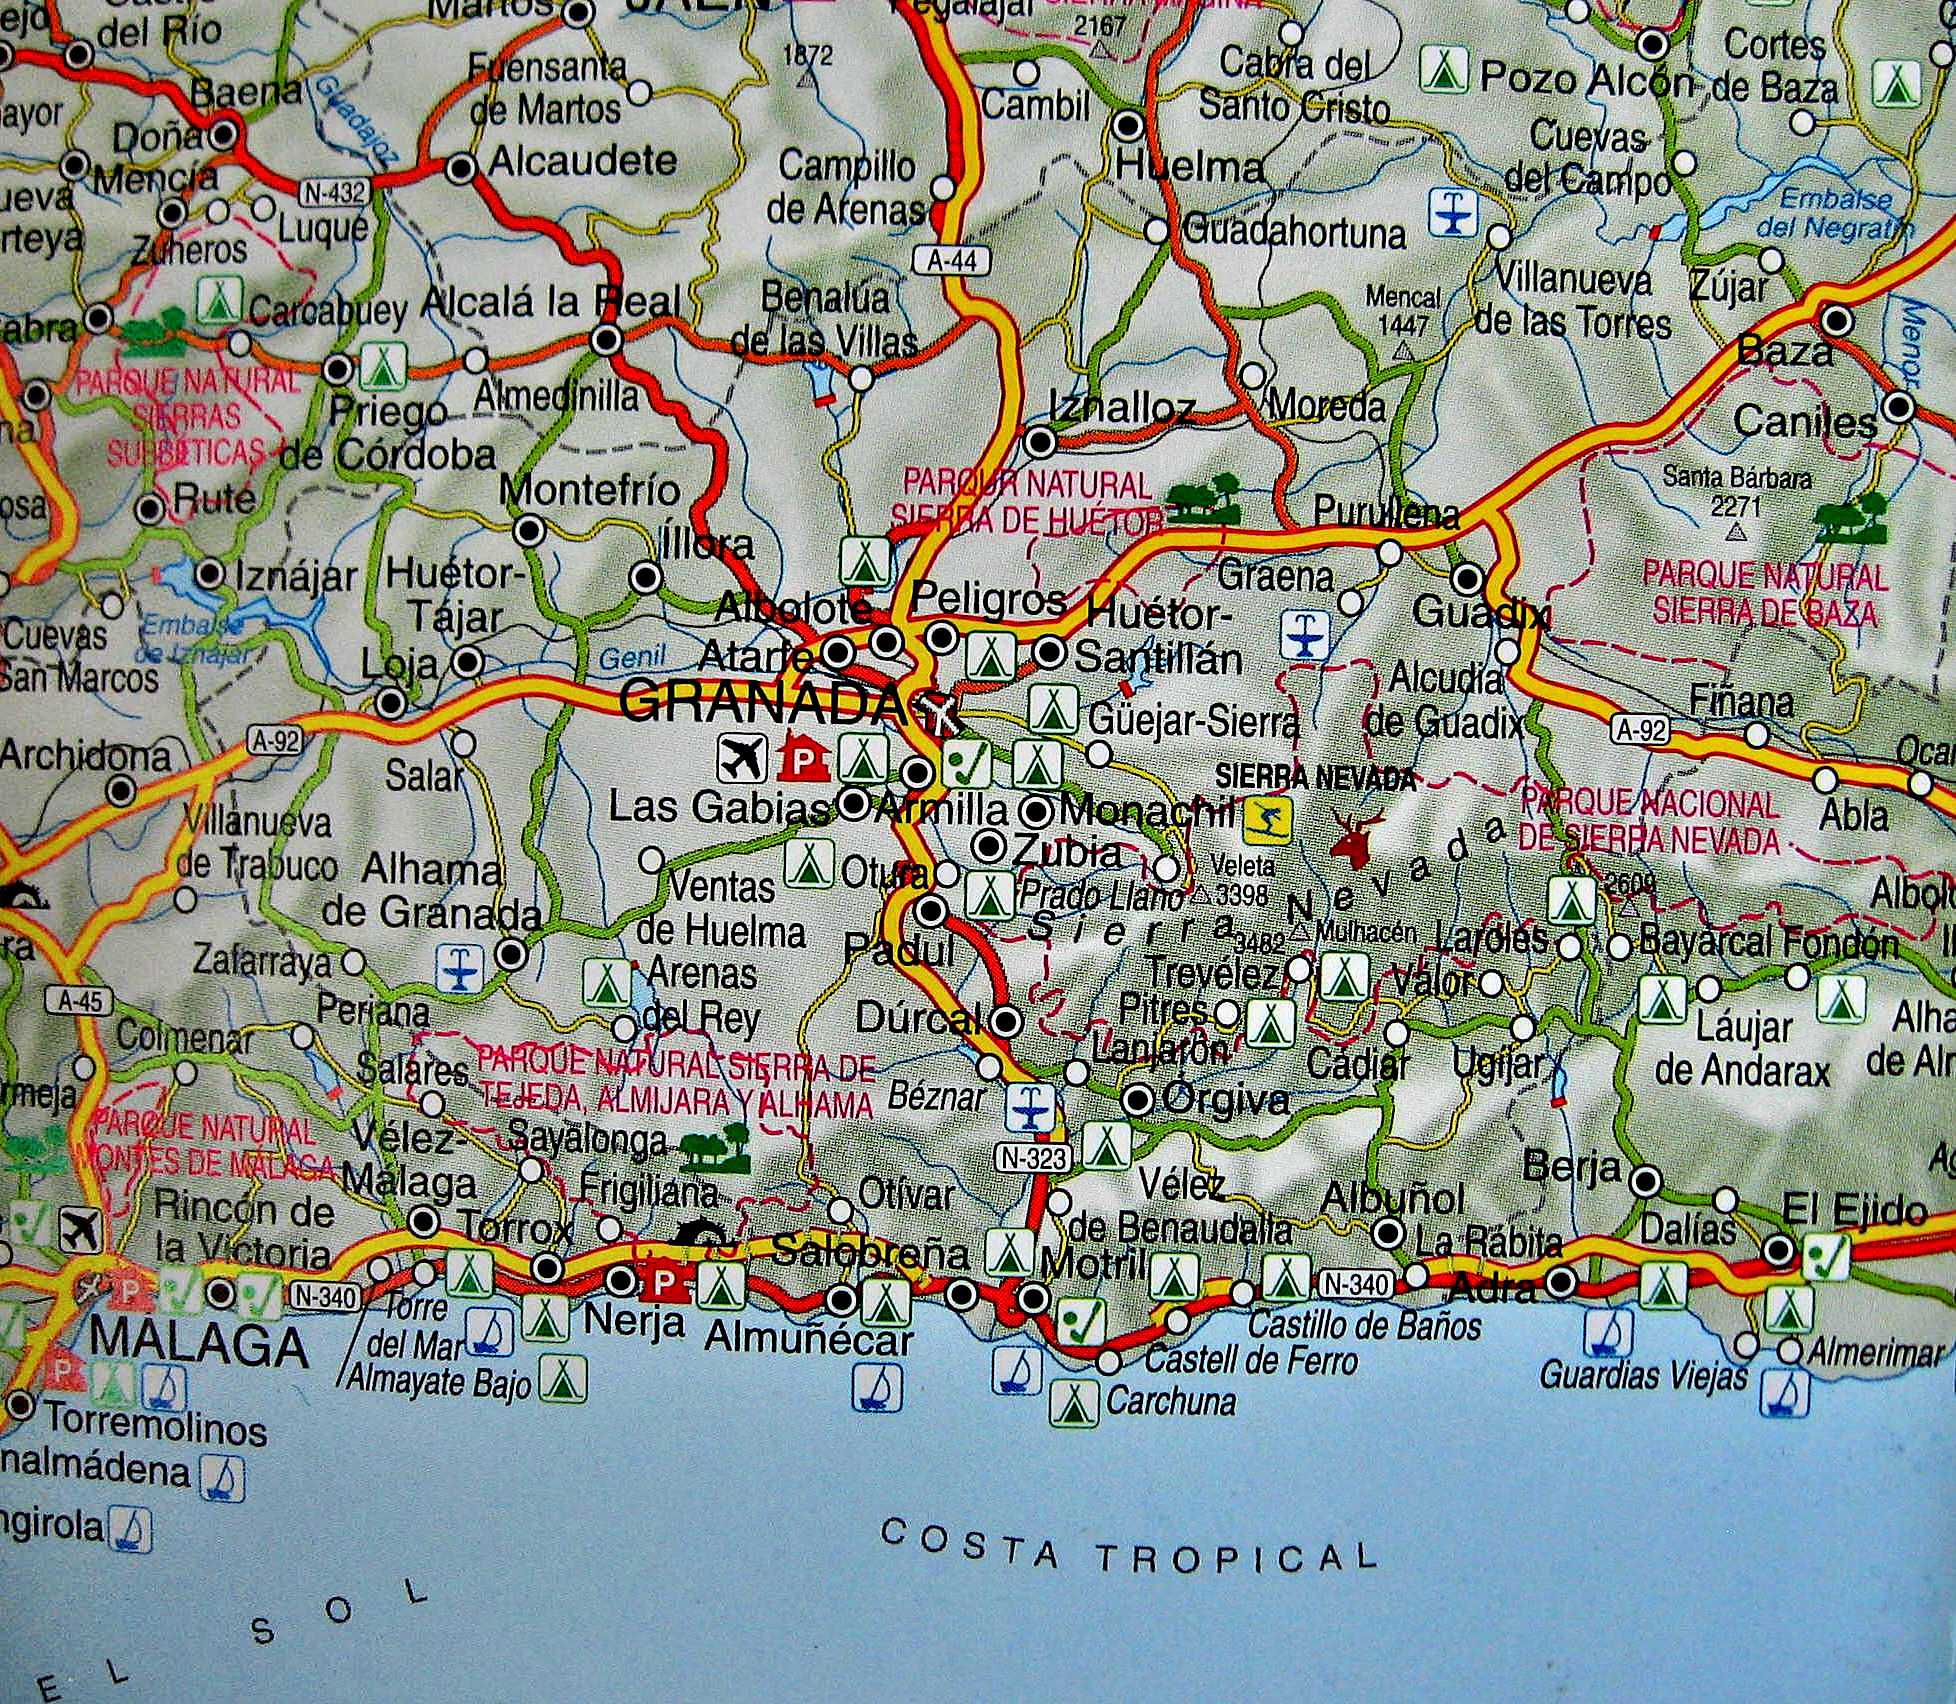 Road map of Granada - Spain 